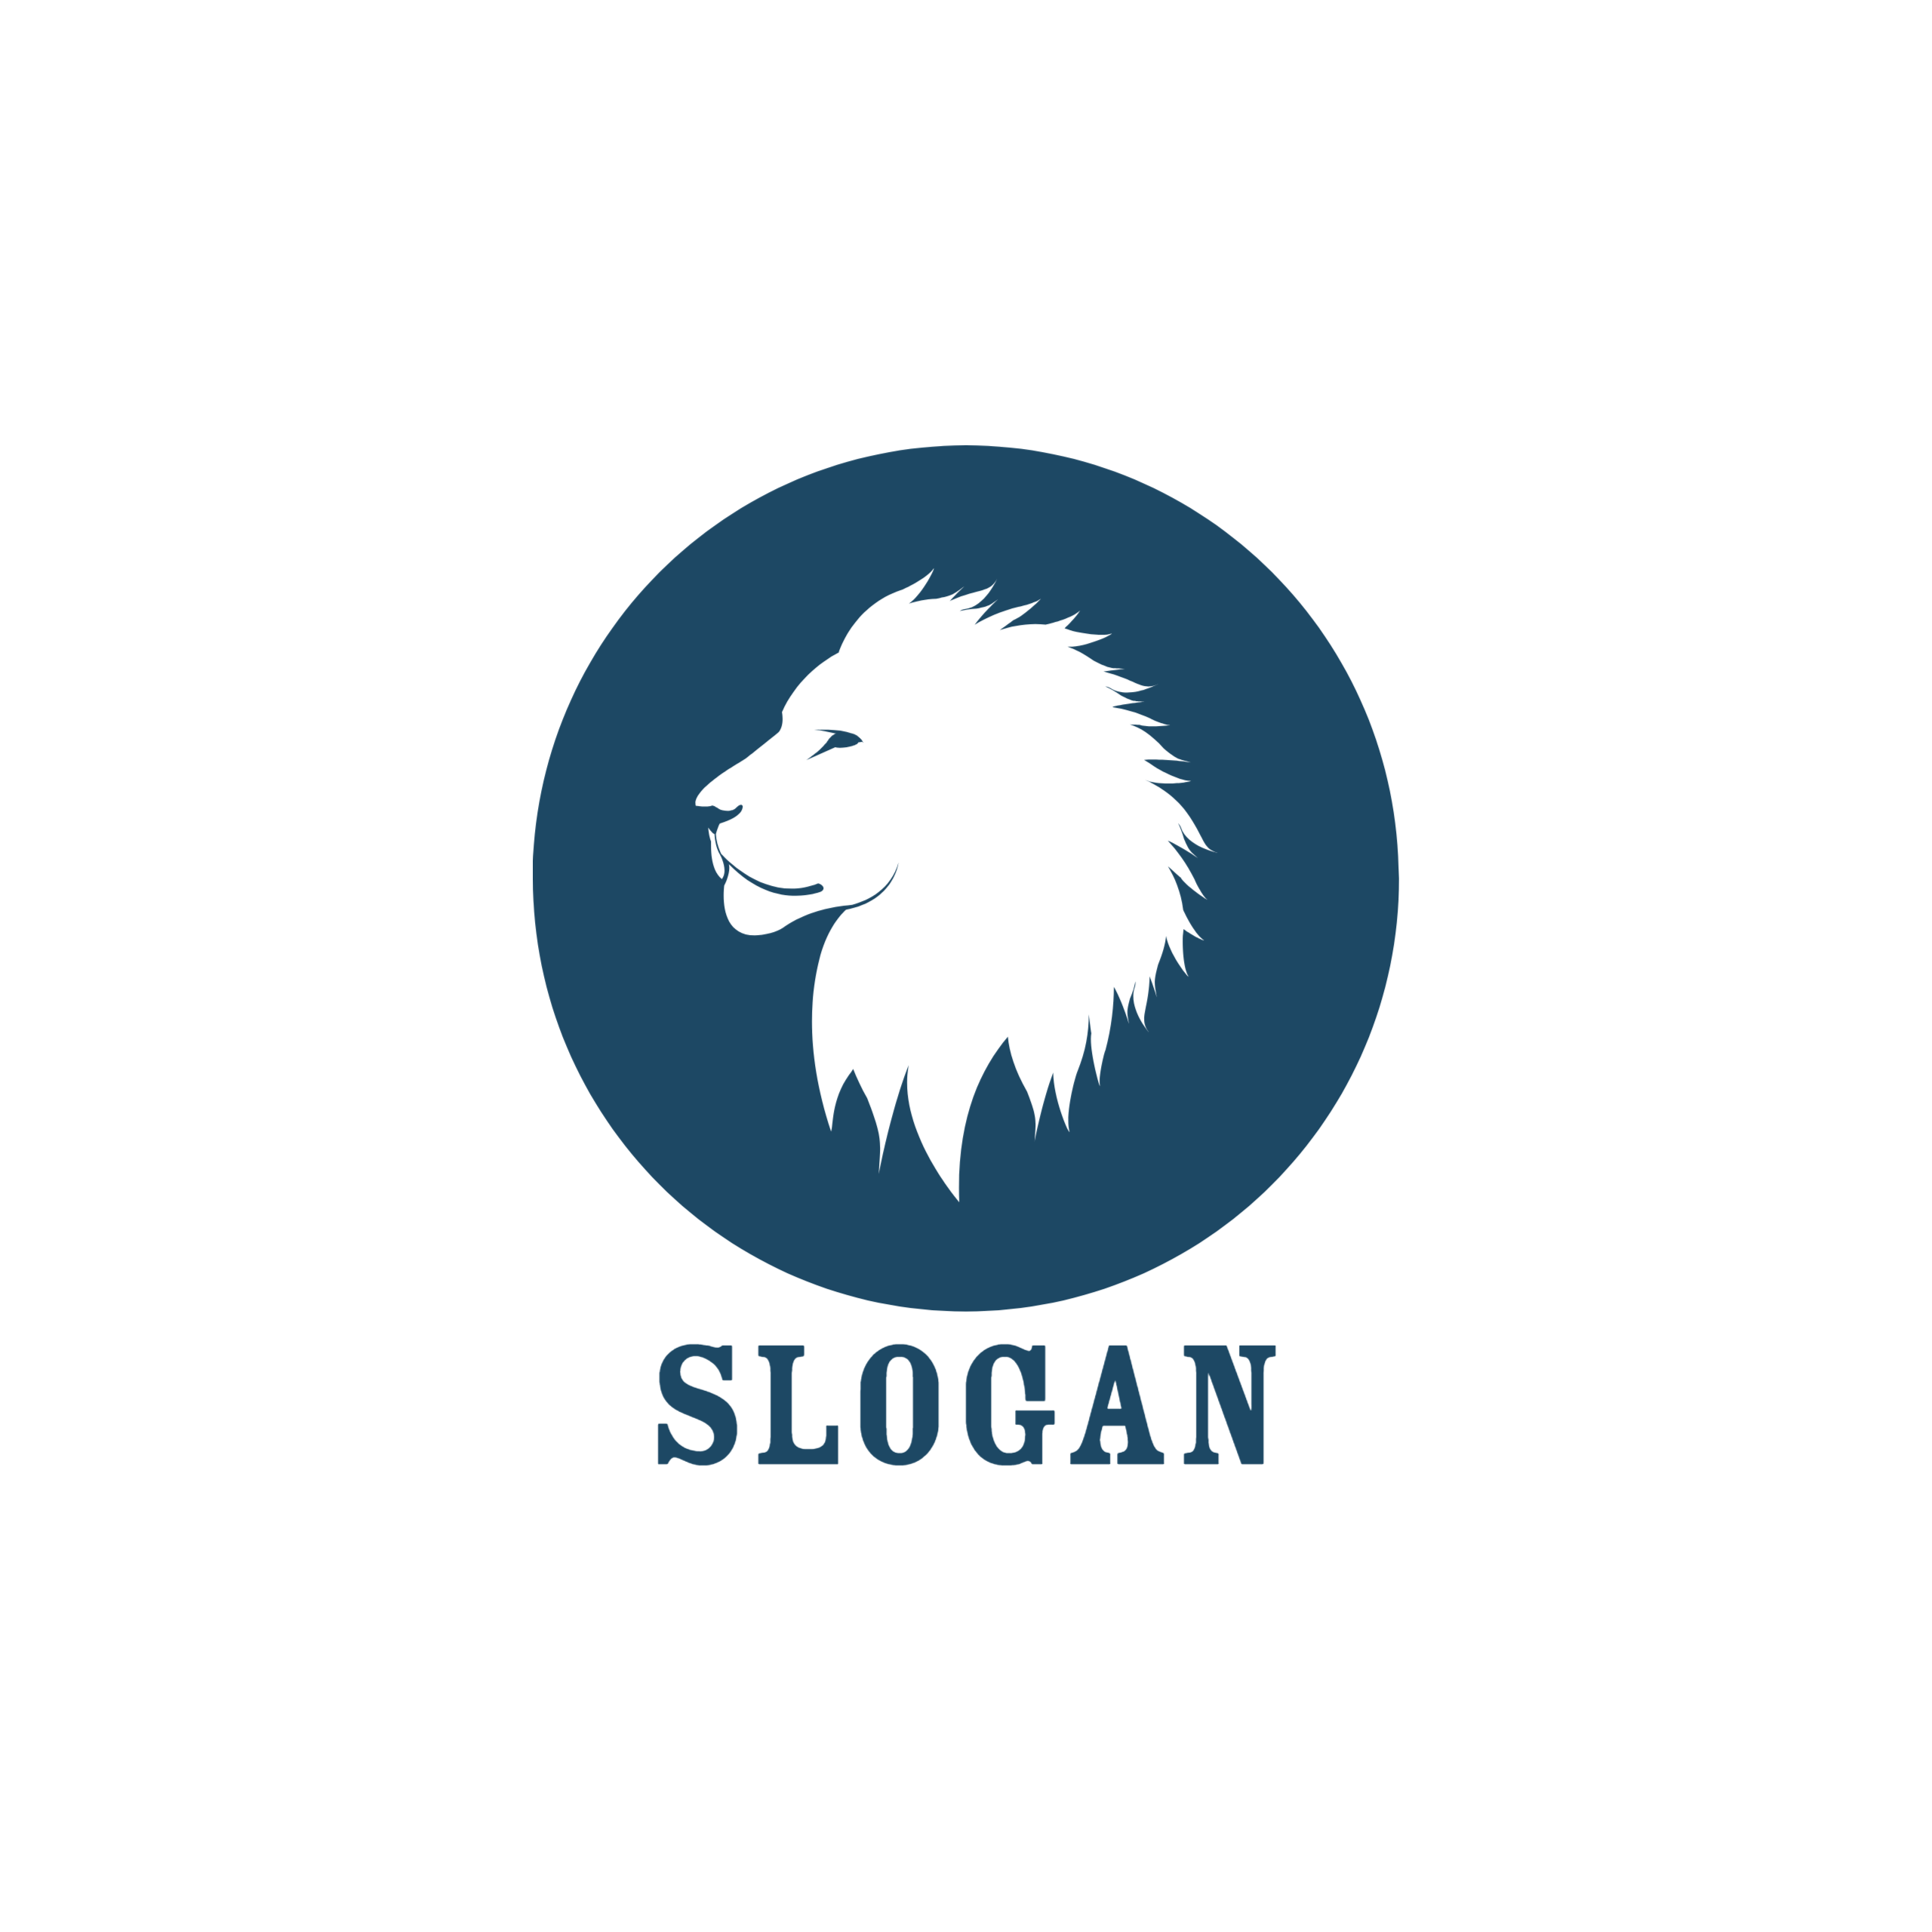 Lion Minimal Creative Logos Bundle